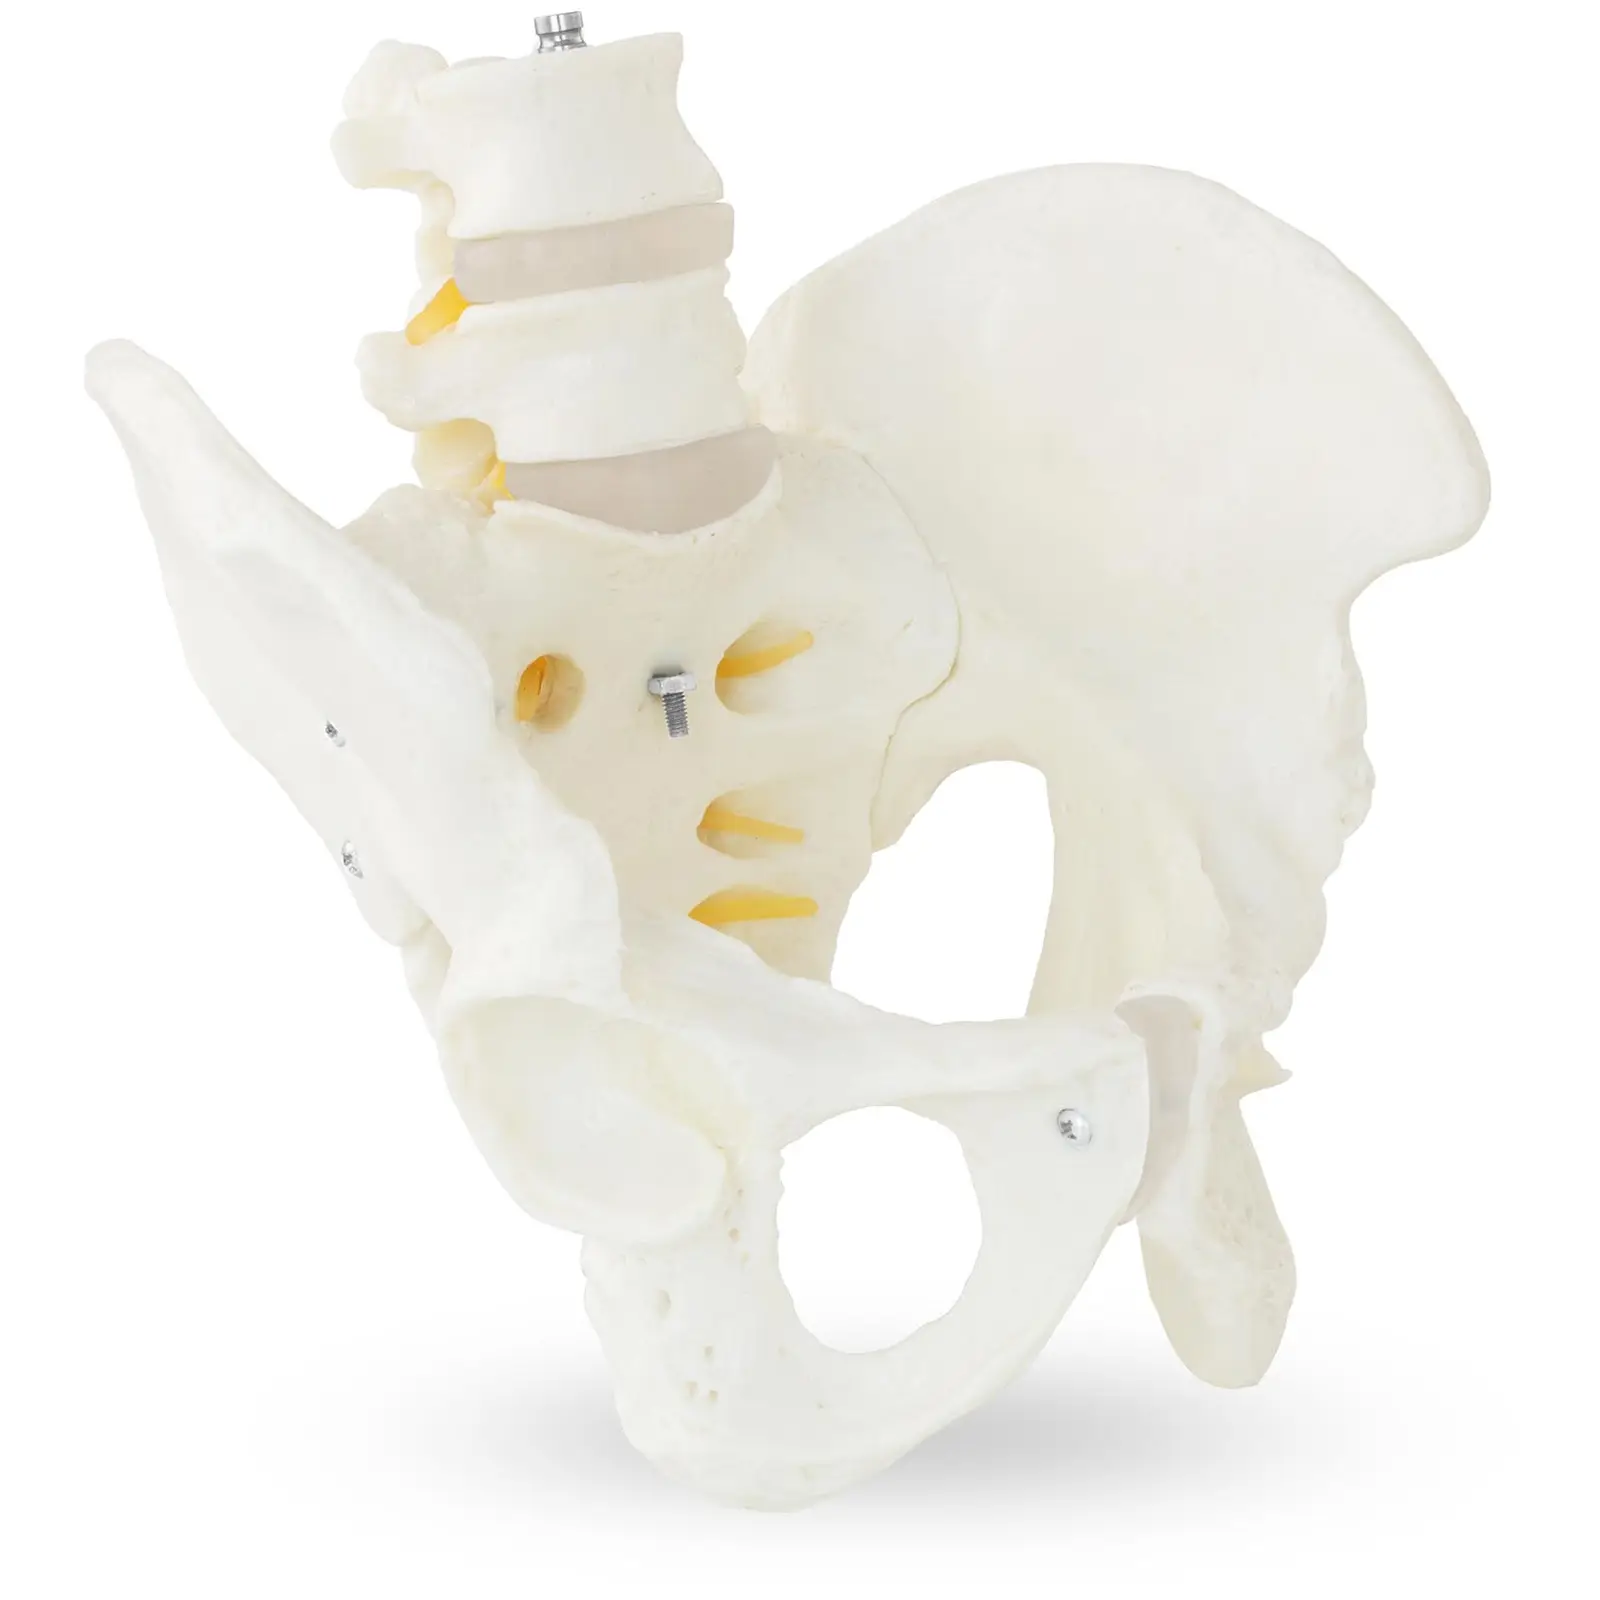 Modello anatomico bacino con vertebre lombari - maschile